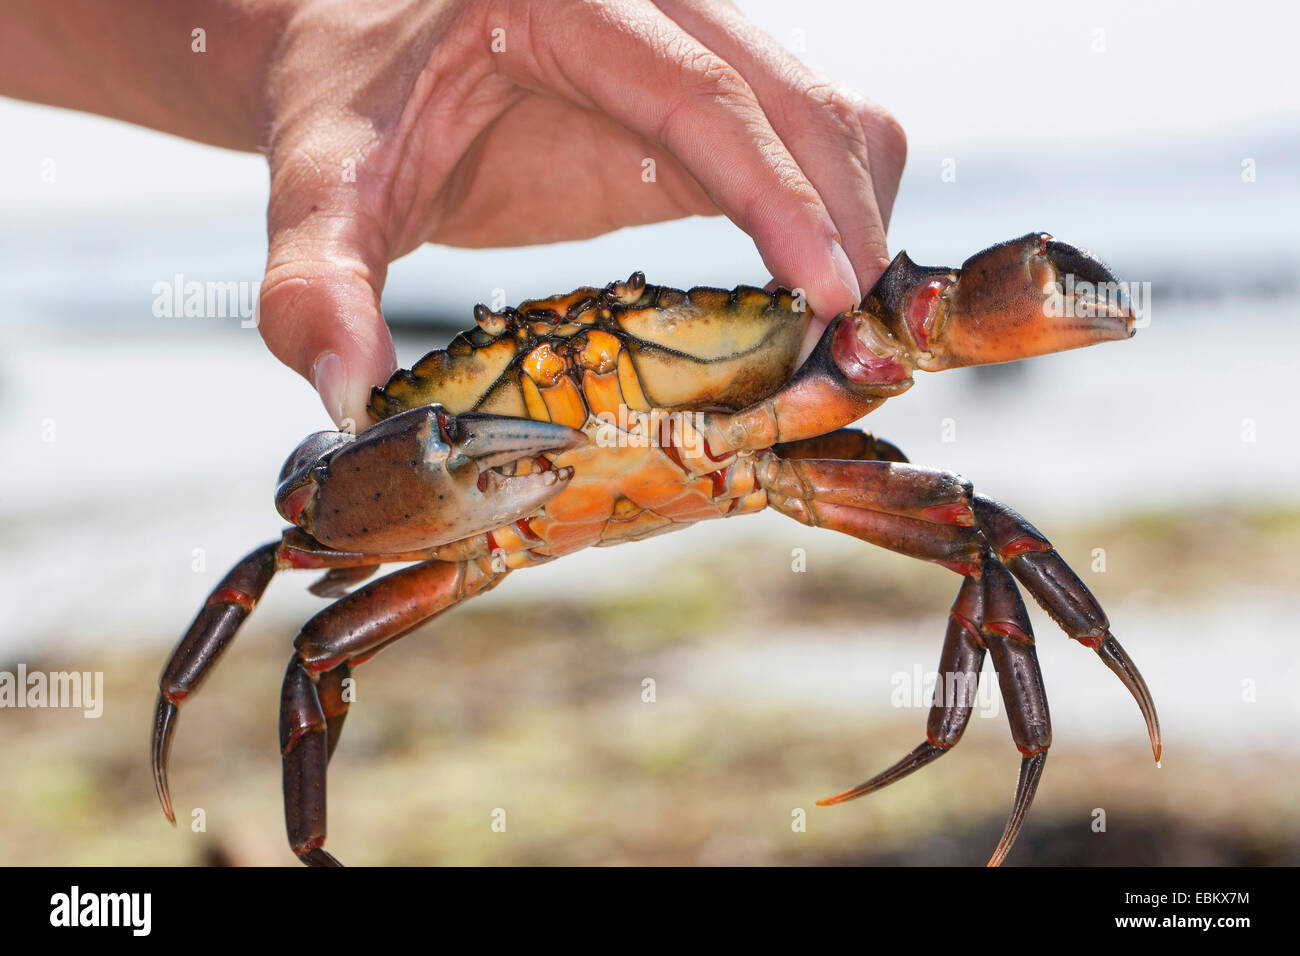 Grüne Ufer Krabbe, grüne Krabbe, North Atlantic Shore Crab (Carcinus Maenas), junge grüne Ufer Krabbe in seiner Hand hält Stockfoto